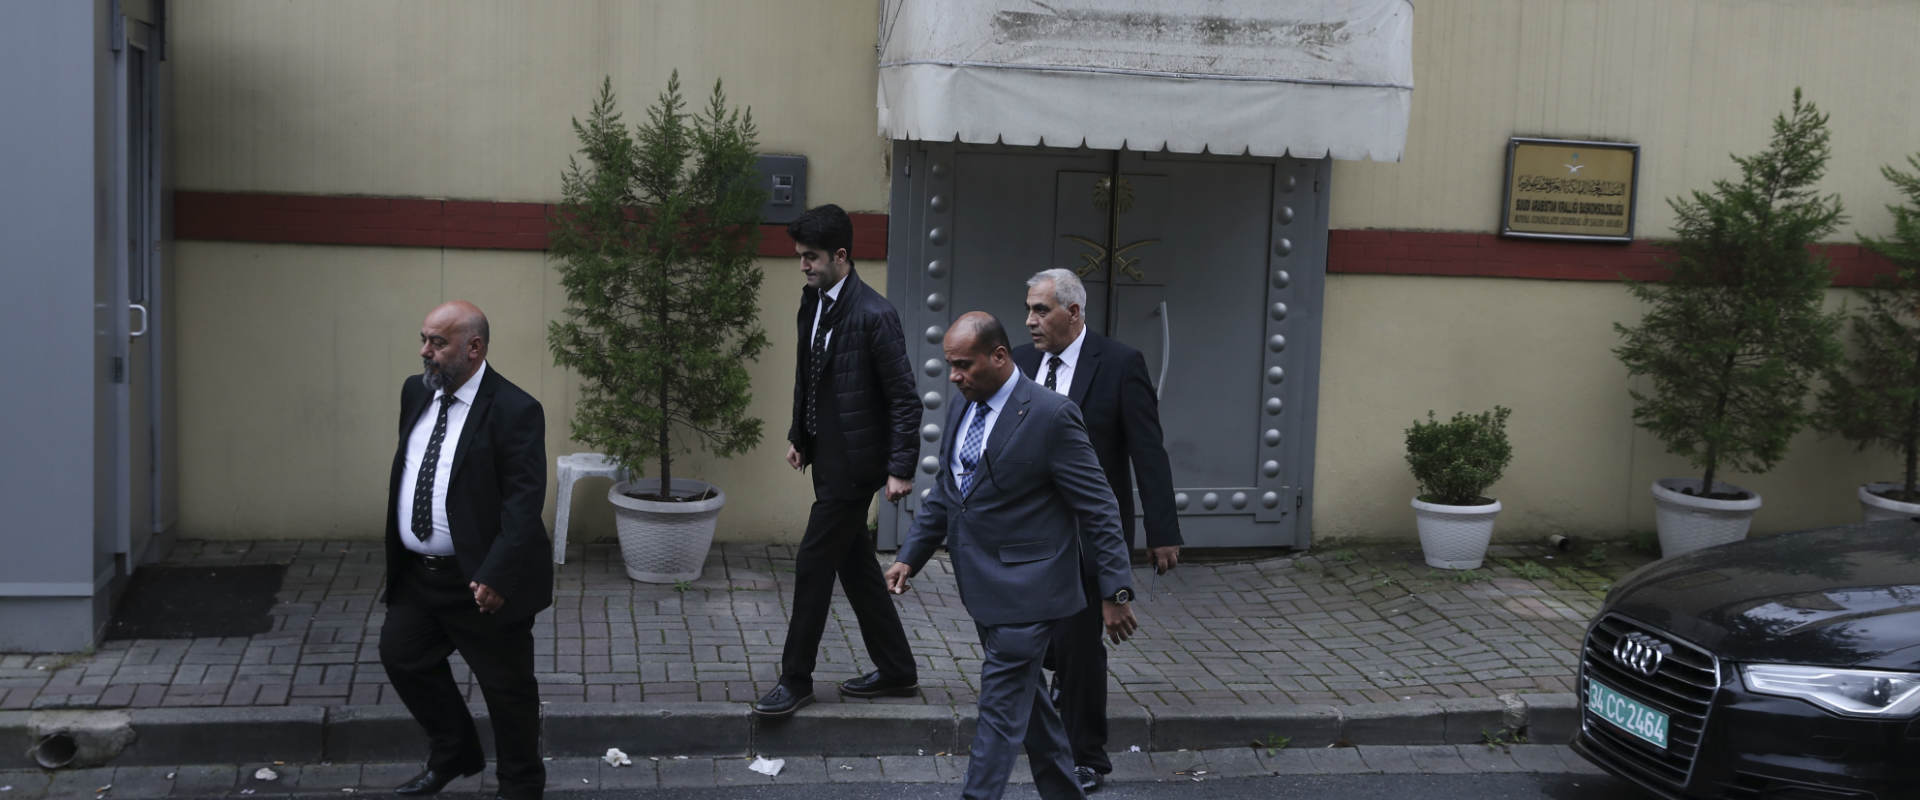 النيابة التركية تستجوب موظفي القنصلية السعودية